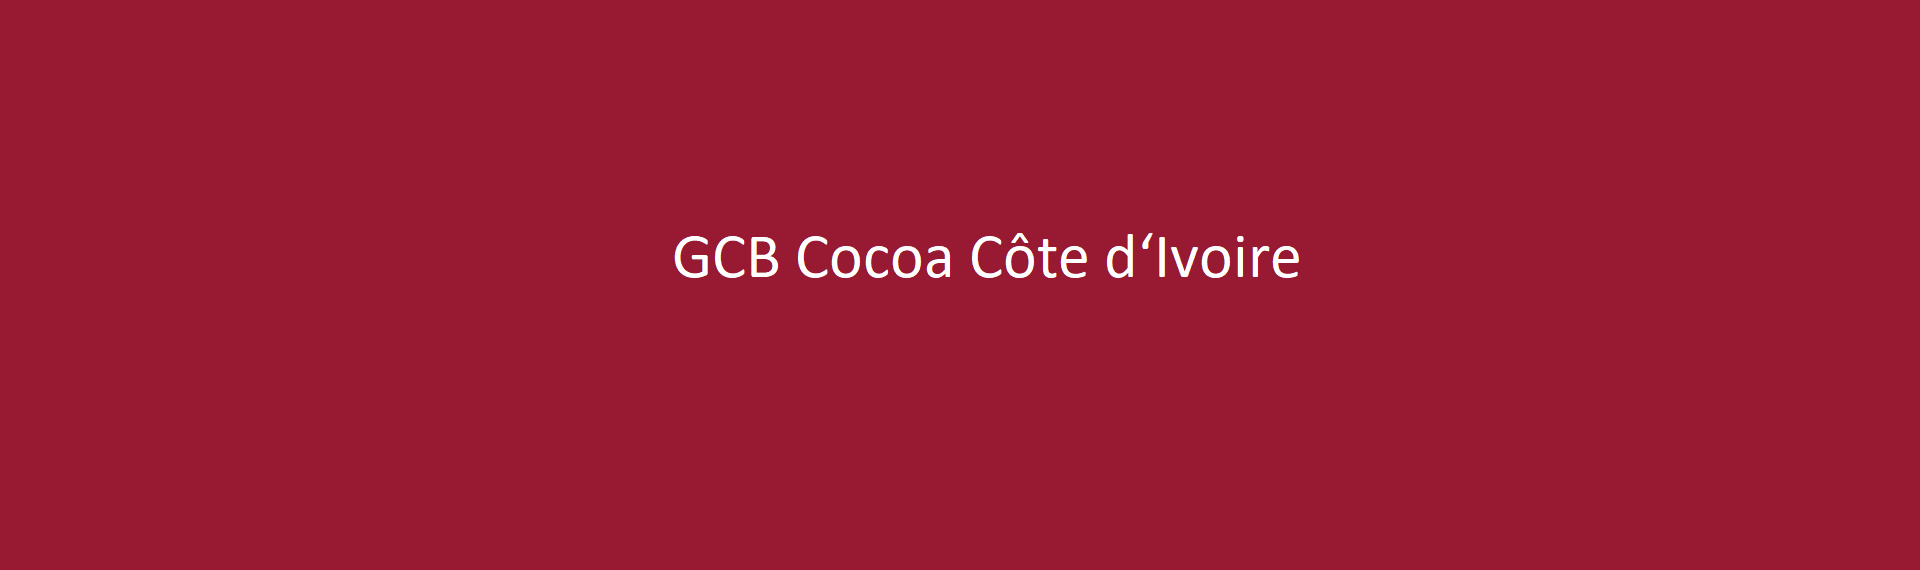 GCB Cocoa Côte d‘Ivoire